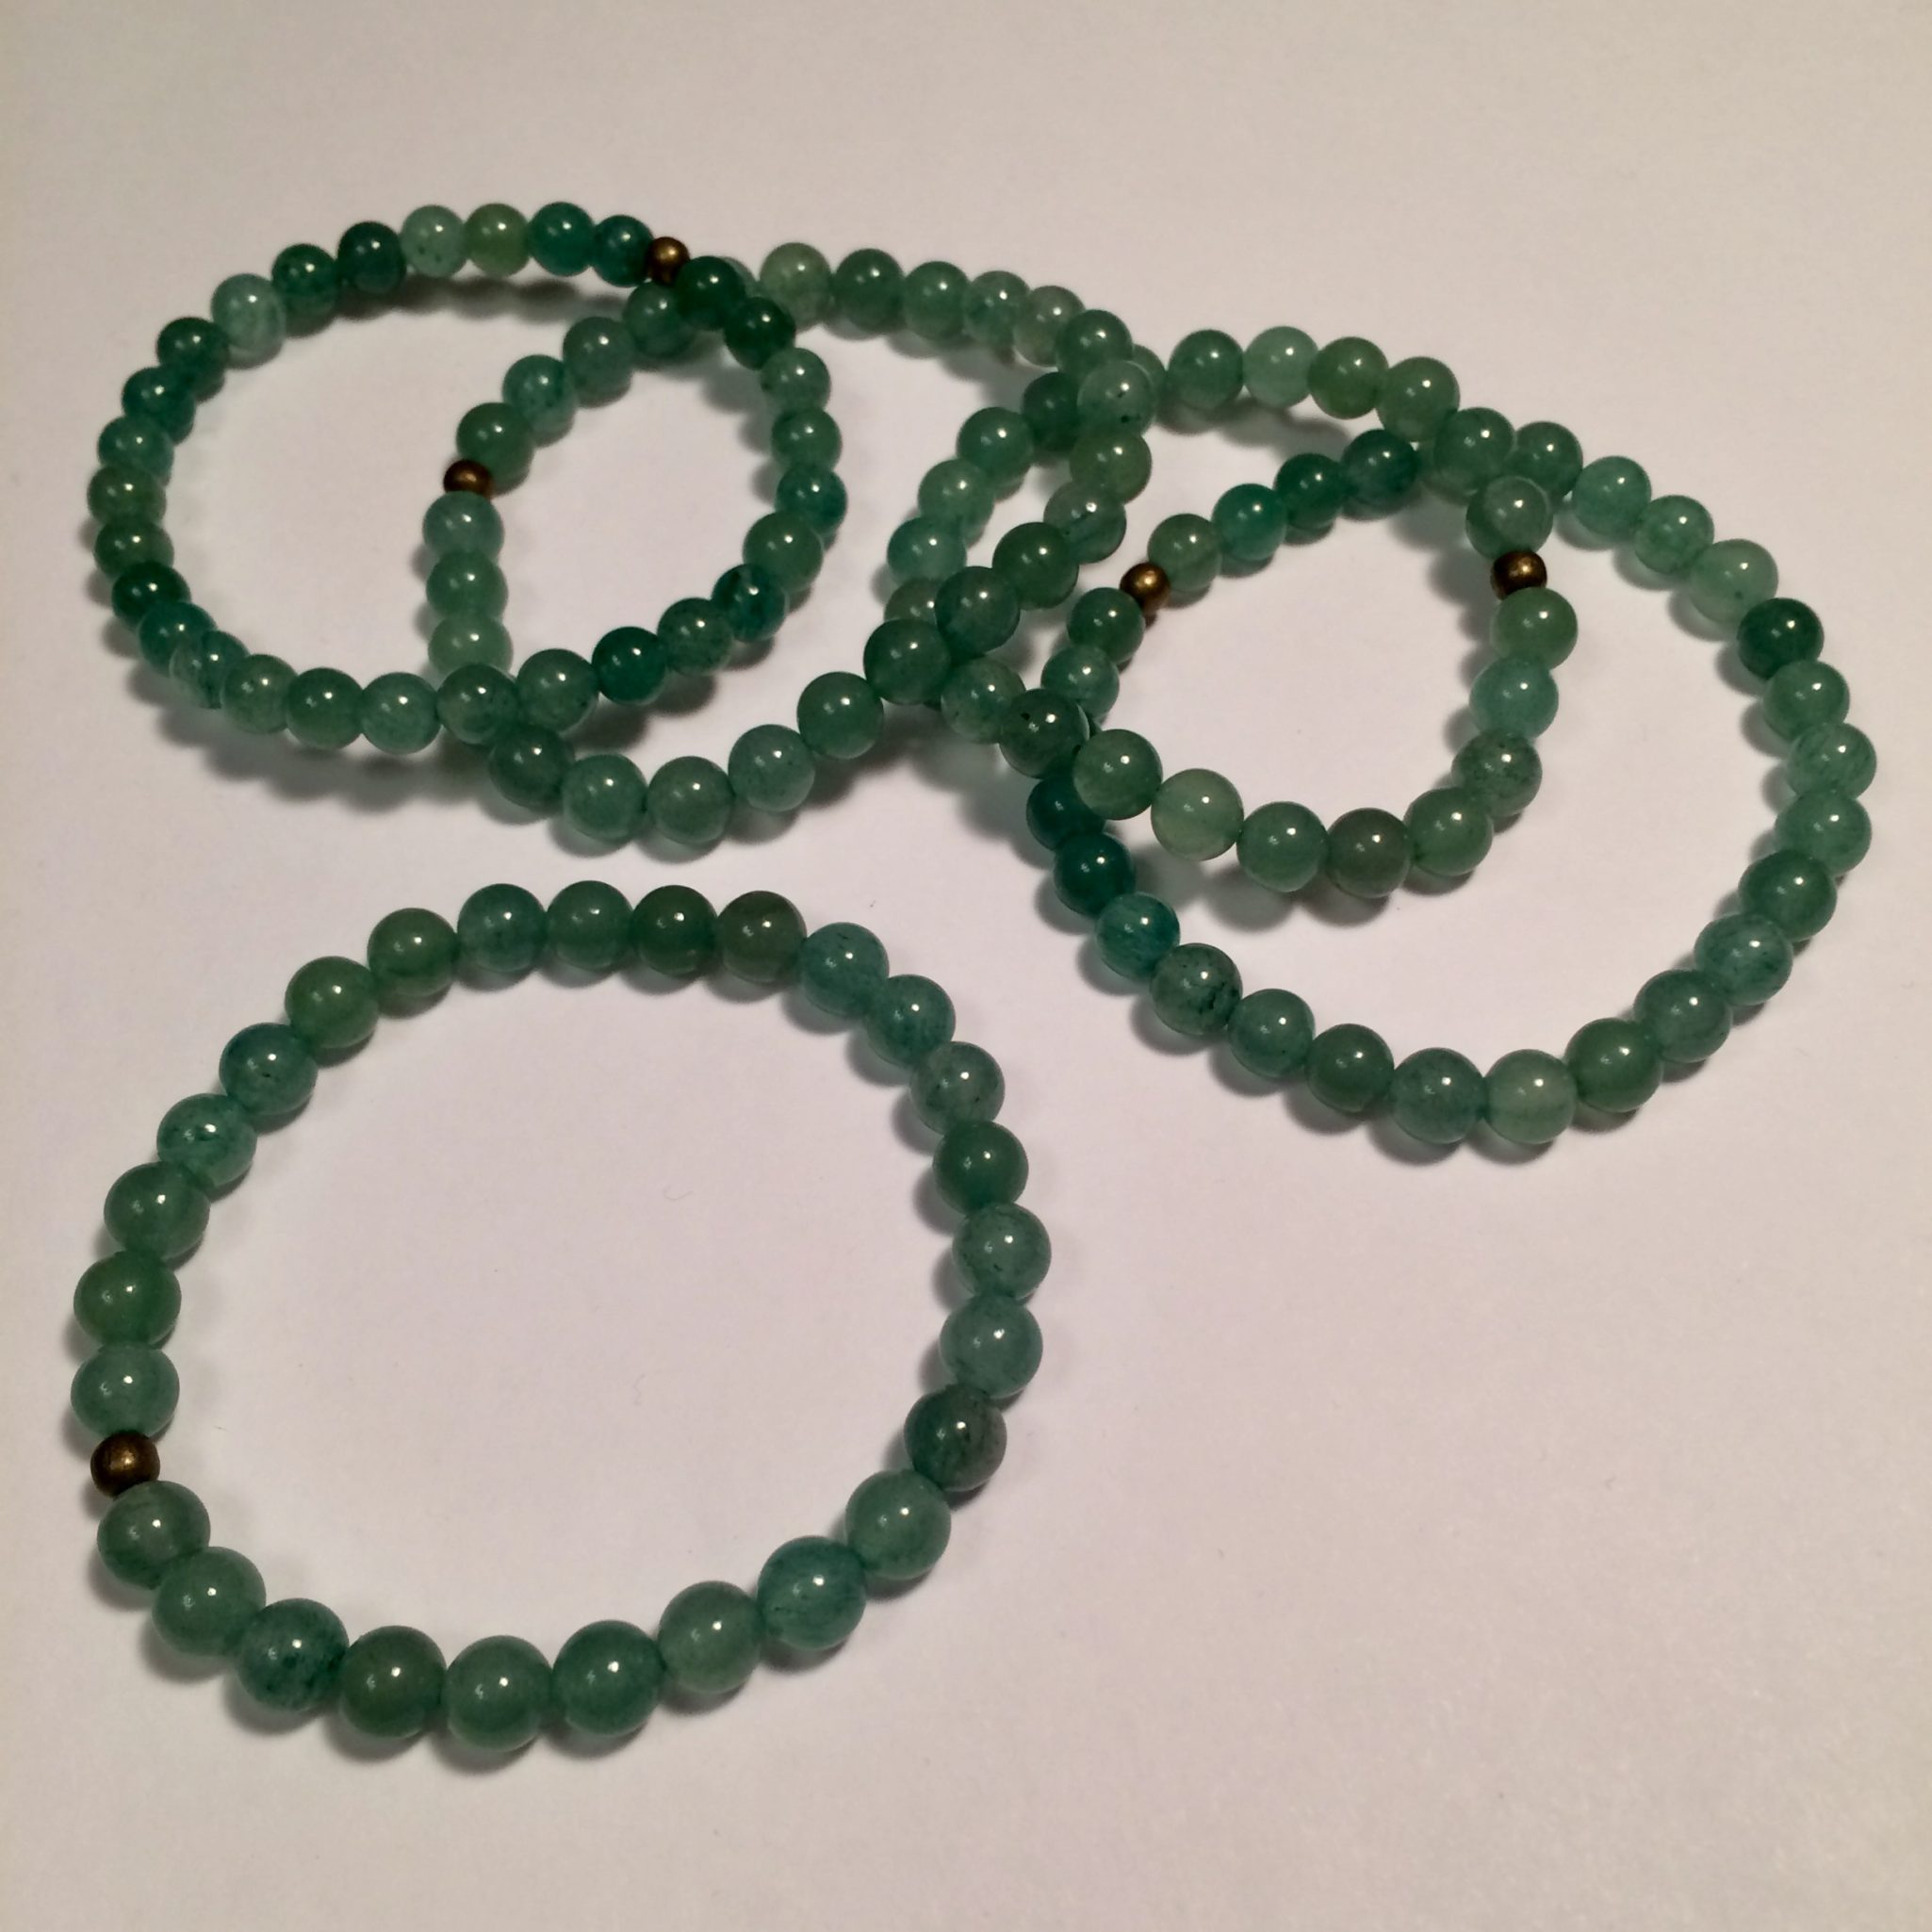 Green Aventurine Gemstone Bracelet for Opportunity